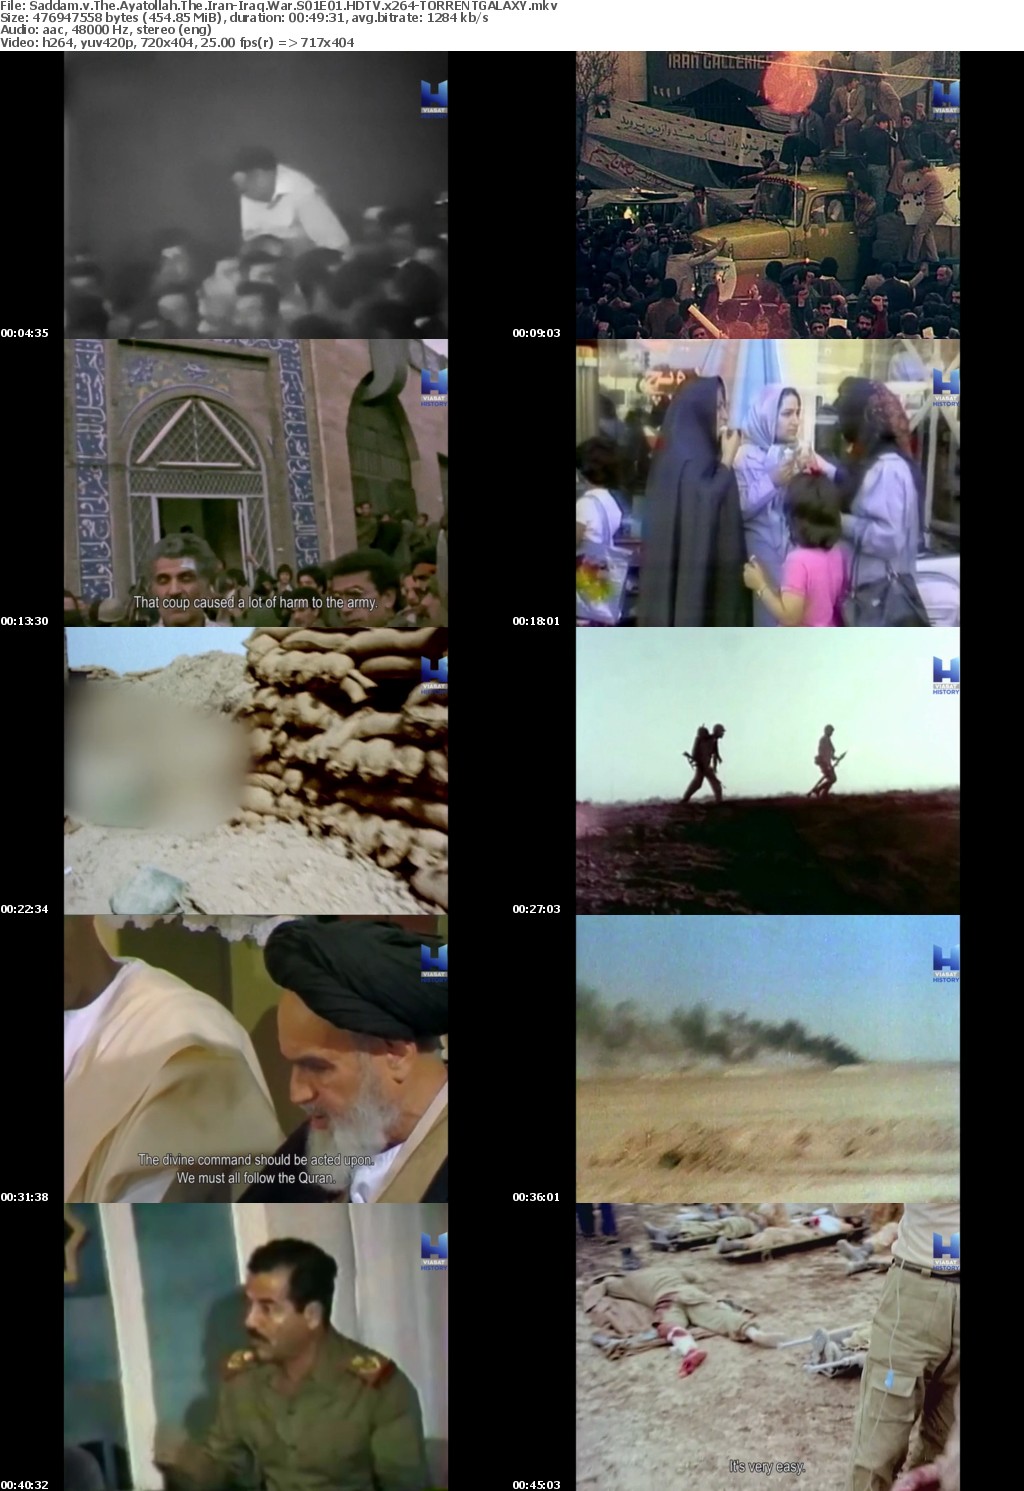 Saddam v The Ayatollah The Iran-Iraq War S01E01 HDTV x264-GALAXY